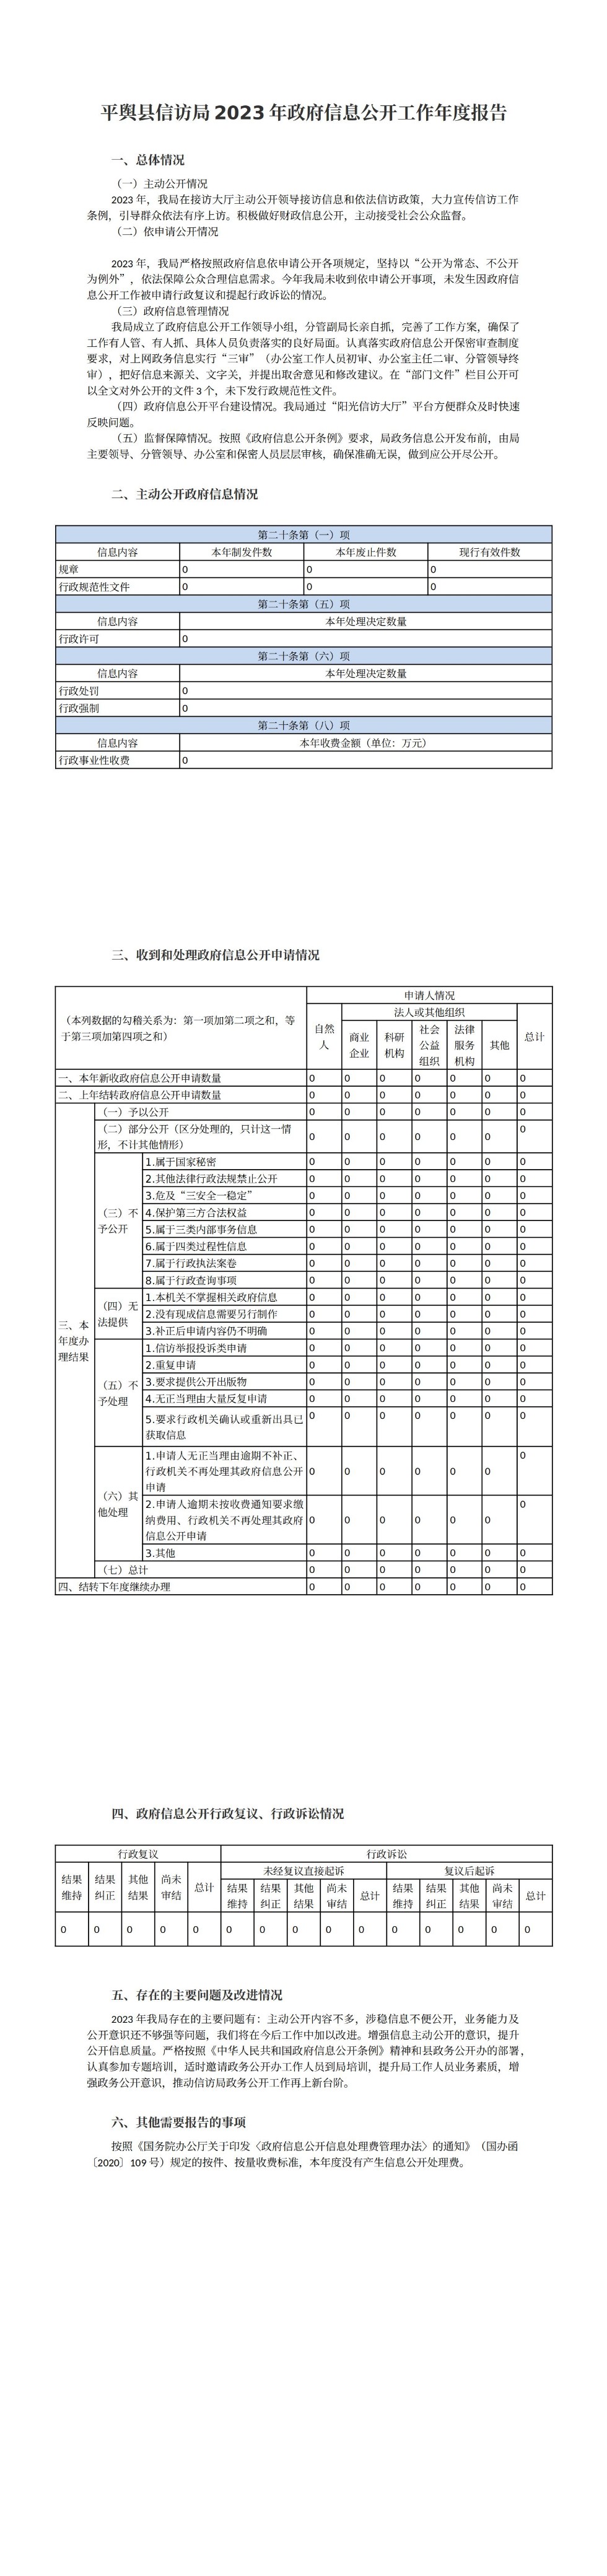 平舆县信访局2023年政府信息公开工作年度报告_00.jpg